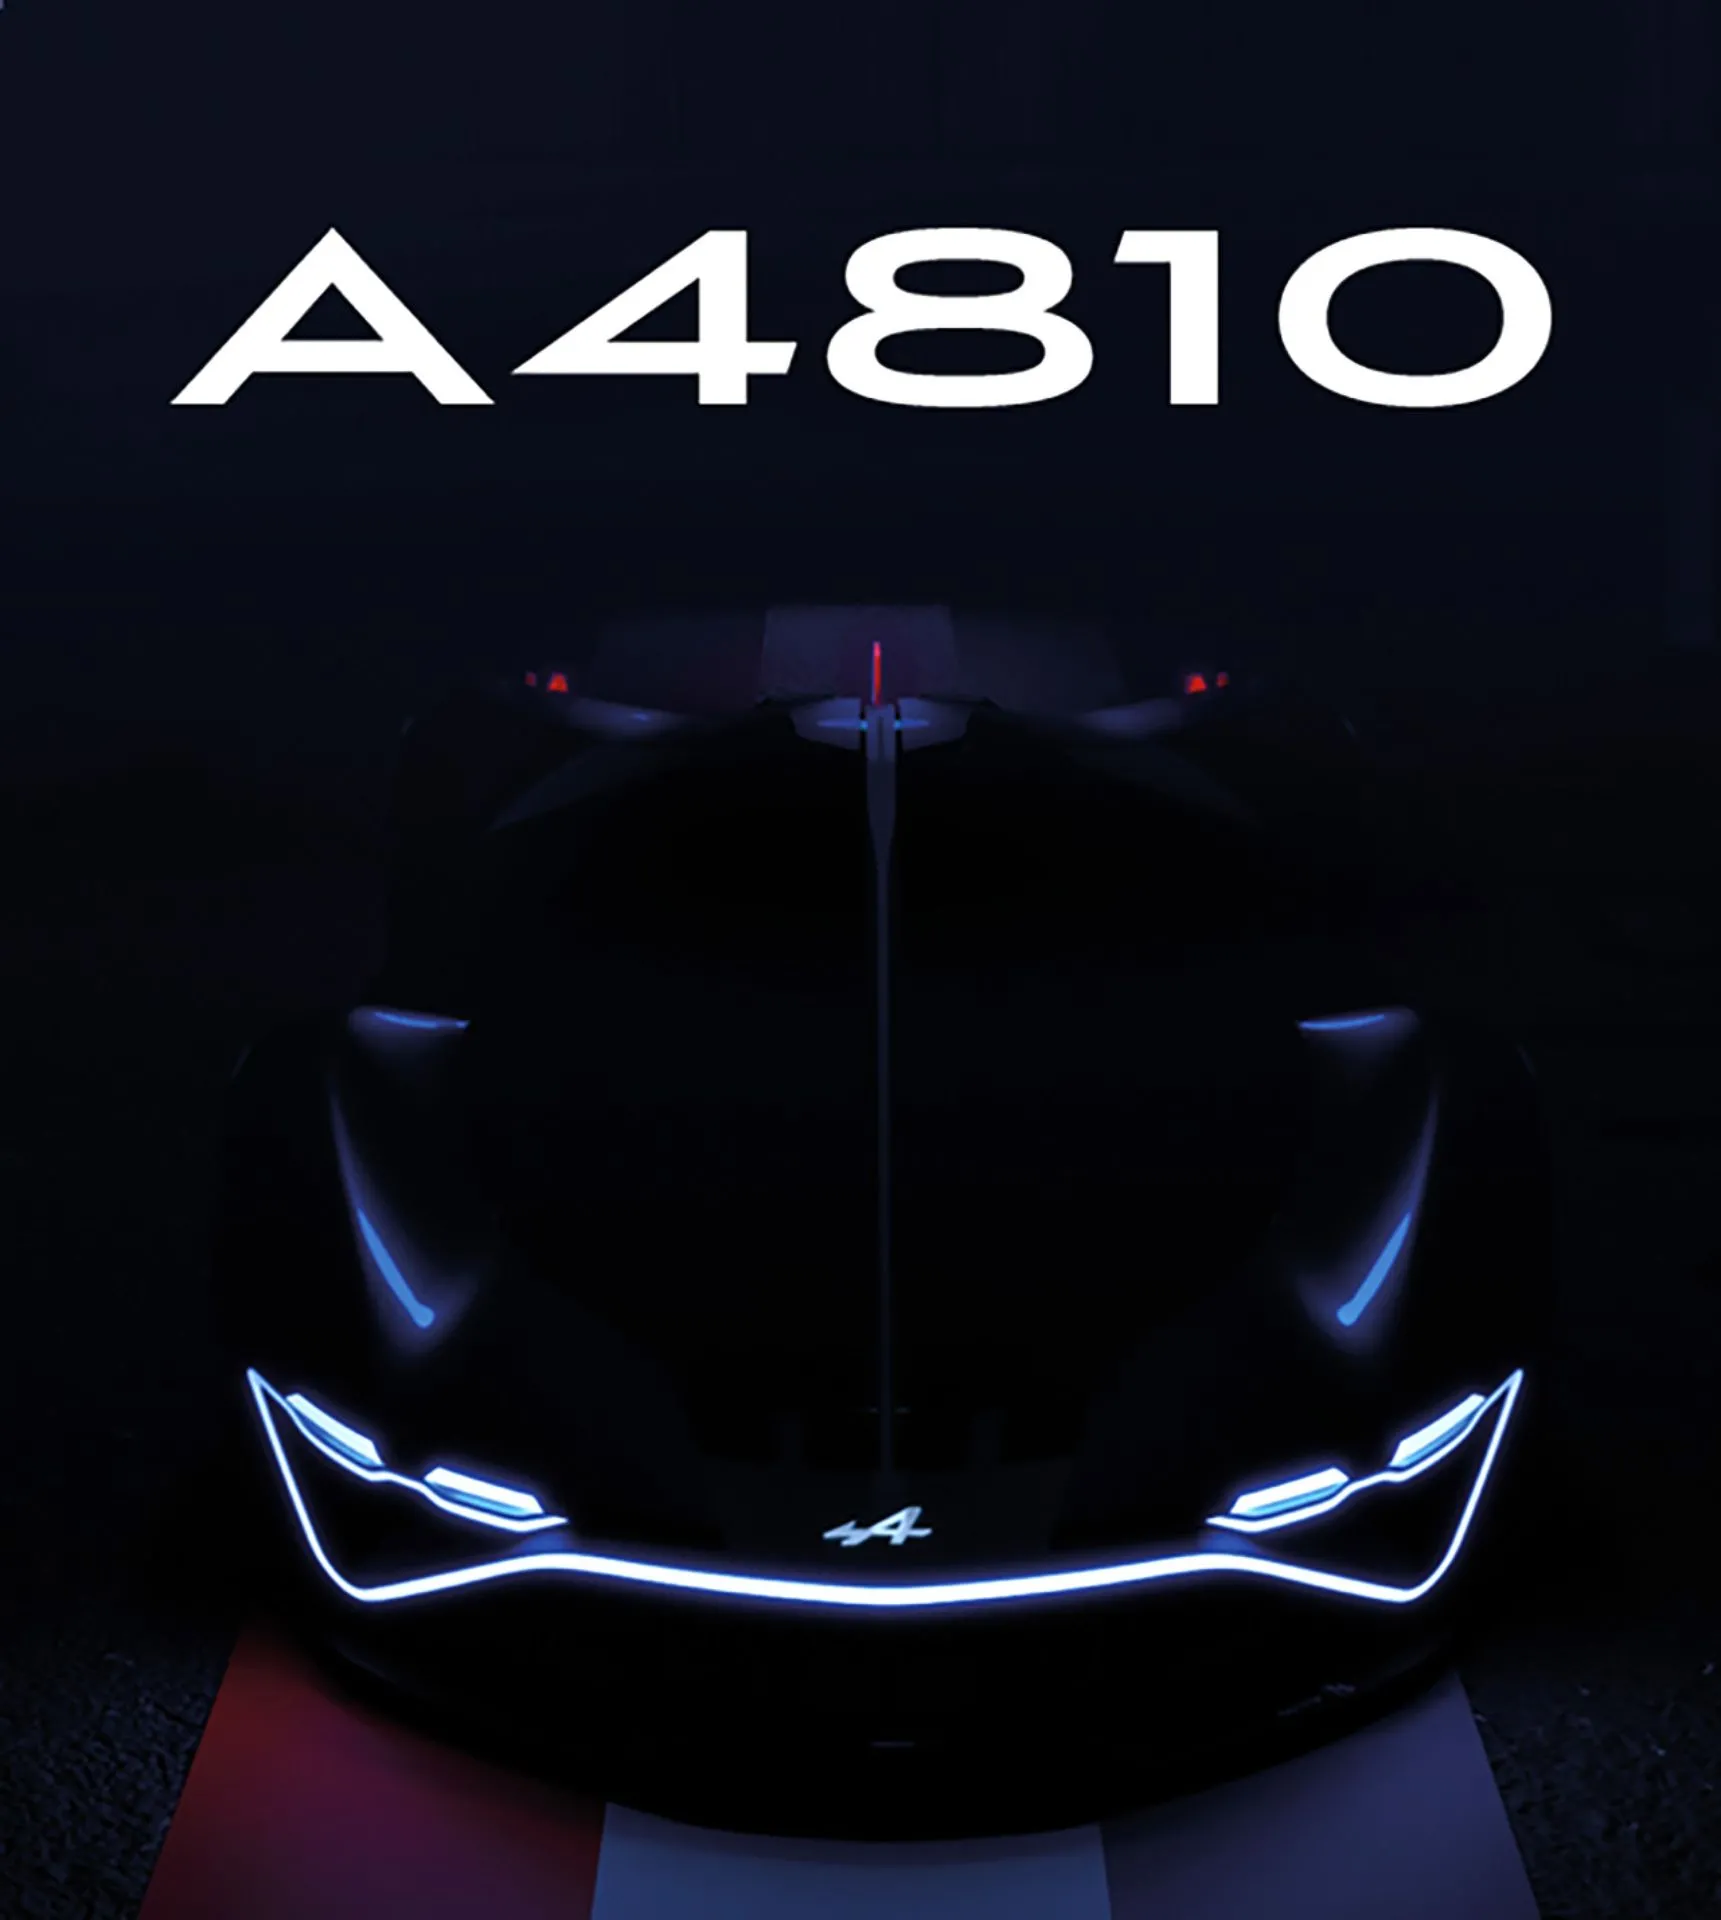 Alpine A4810 Teaser